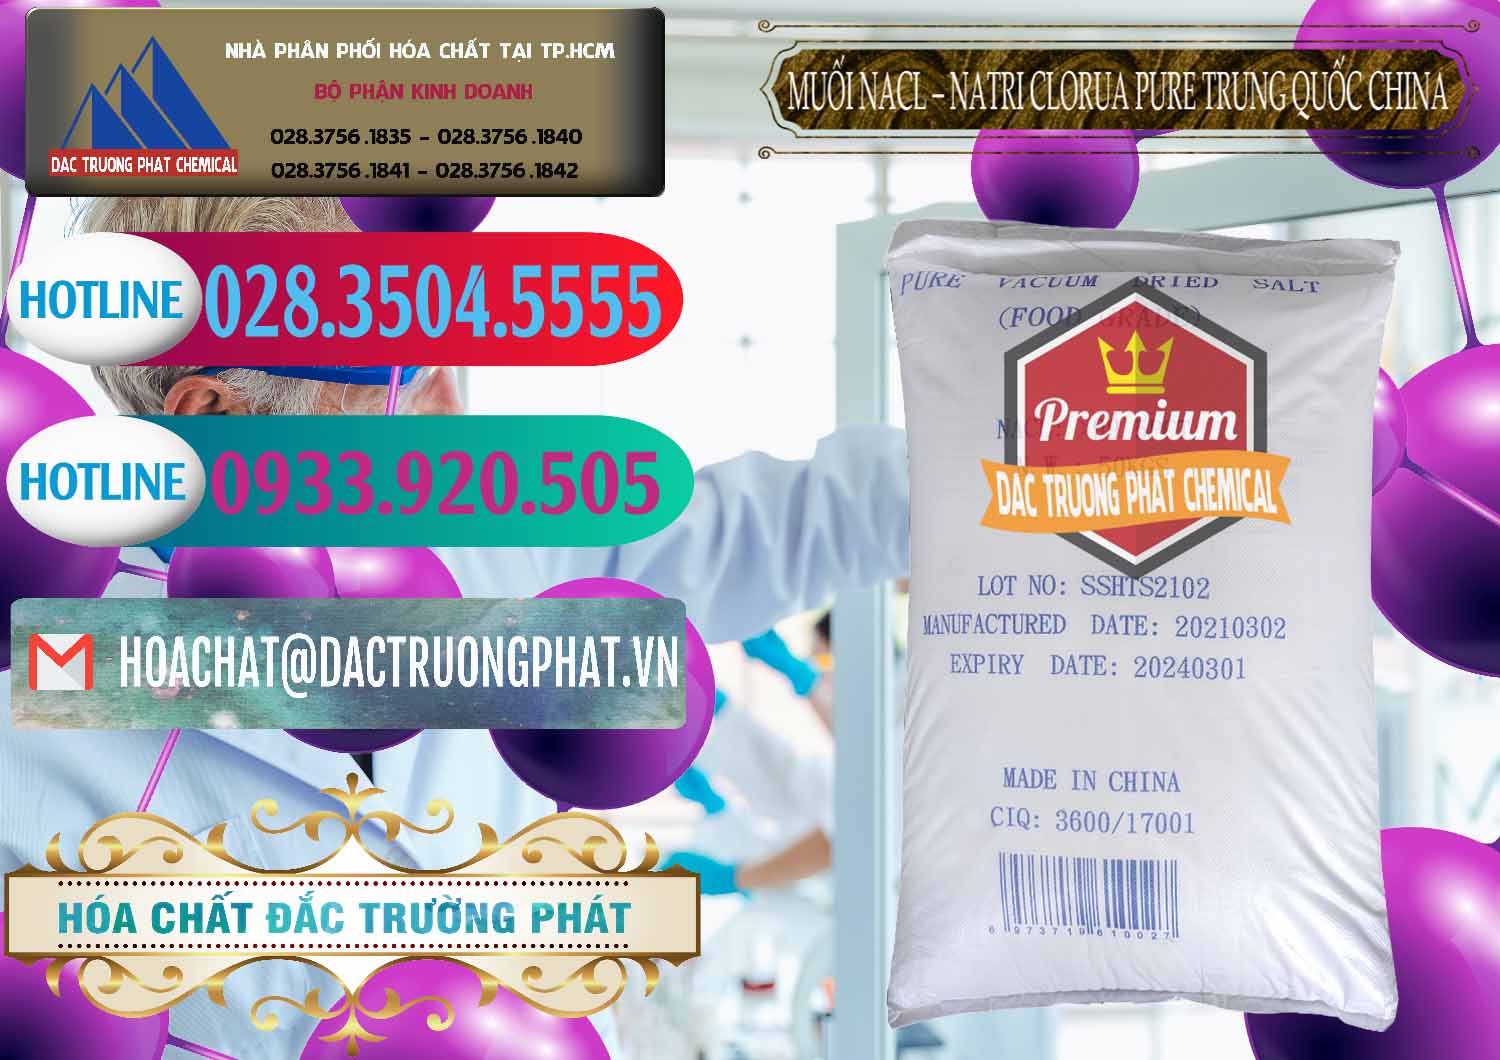 Kinh doanh ( bán ) Muối NaCL – Sodium Chloride Pure Trung Quốc China - 0230 - Nơi chuyên cung cấp _ bán hóa chất tại TP.HCM - truongphat.vn